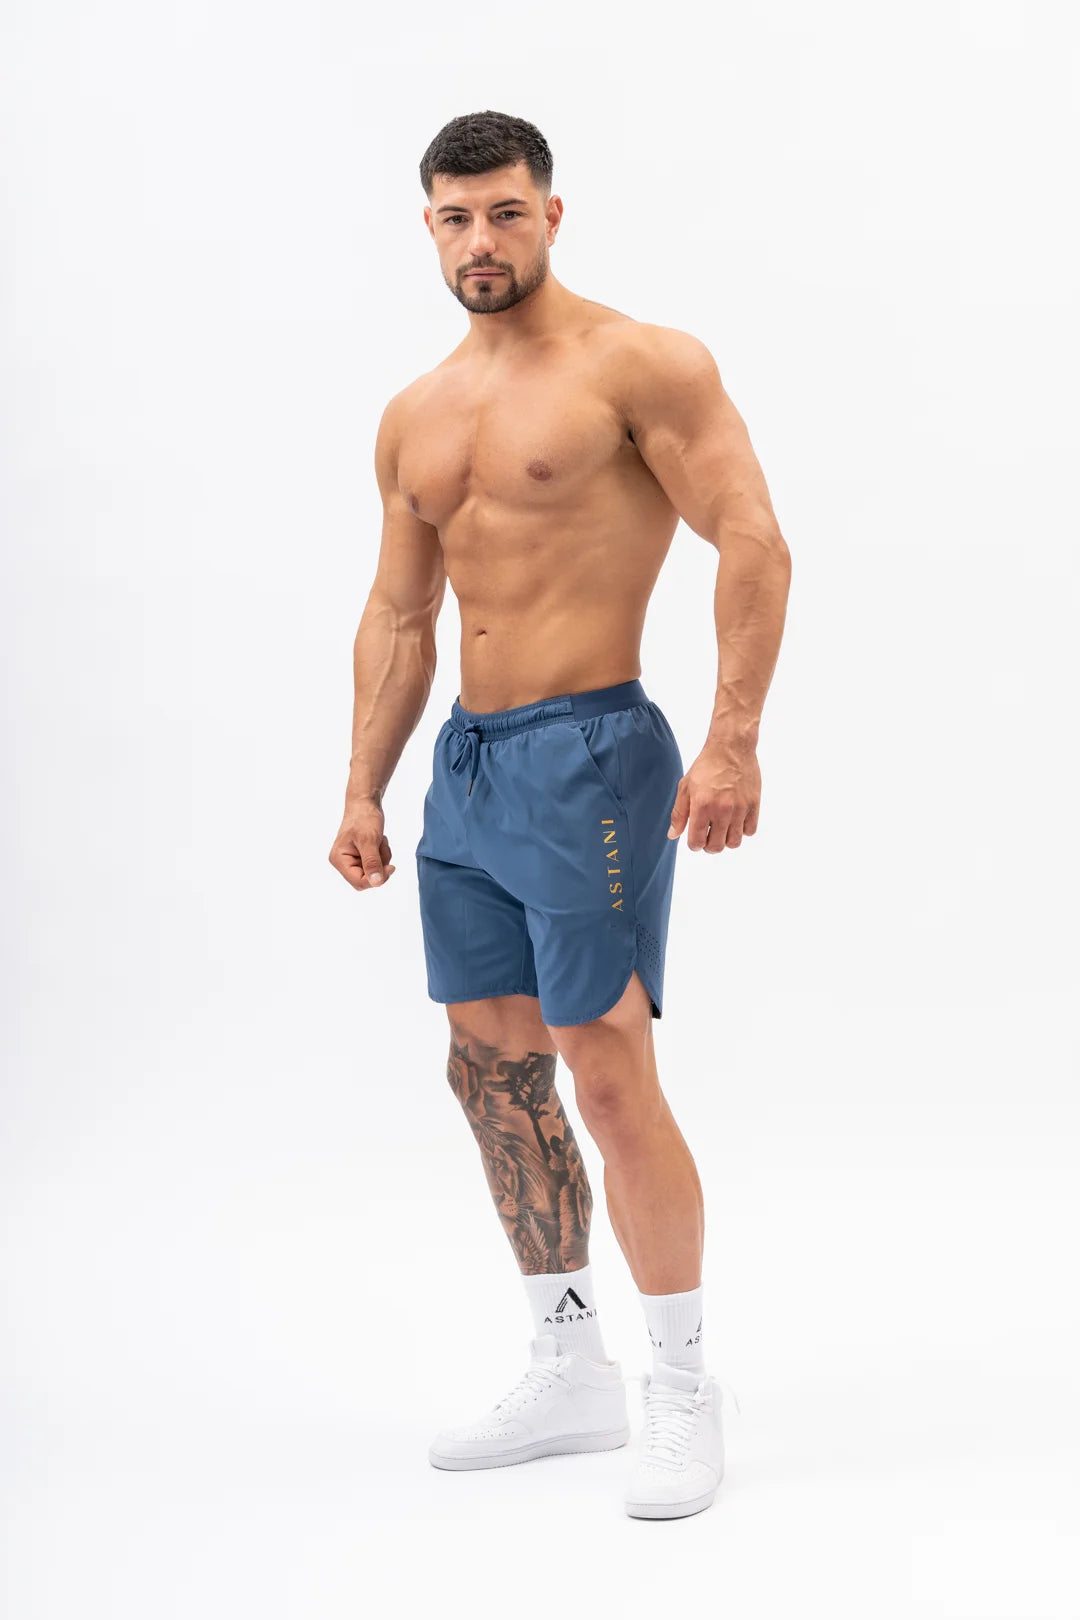 A VELOCE Shorts - Blå